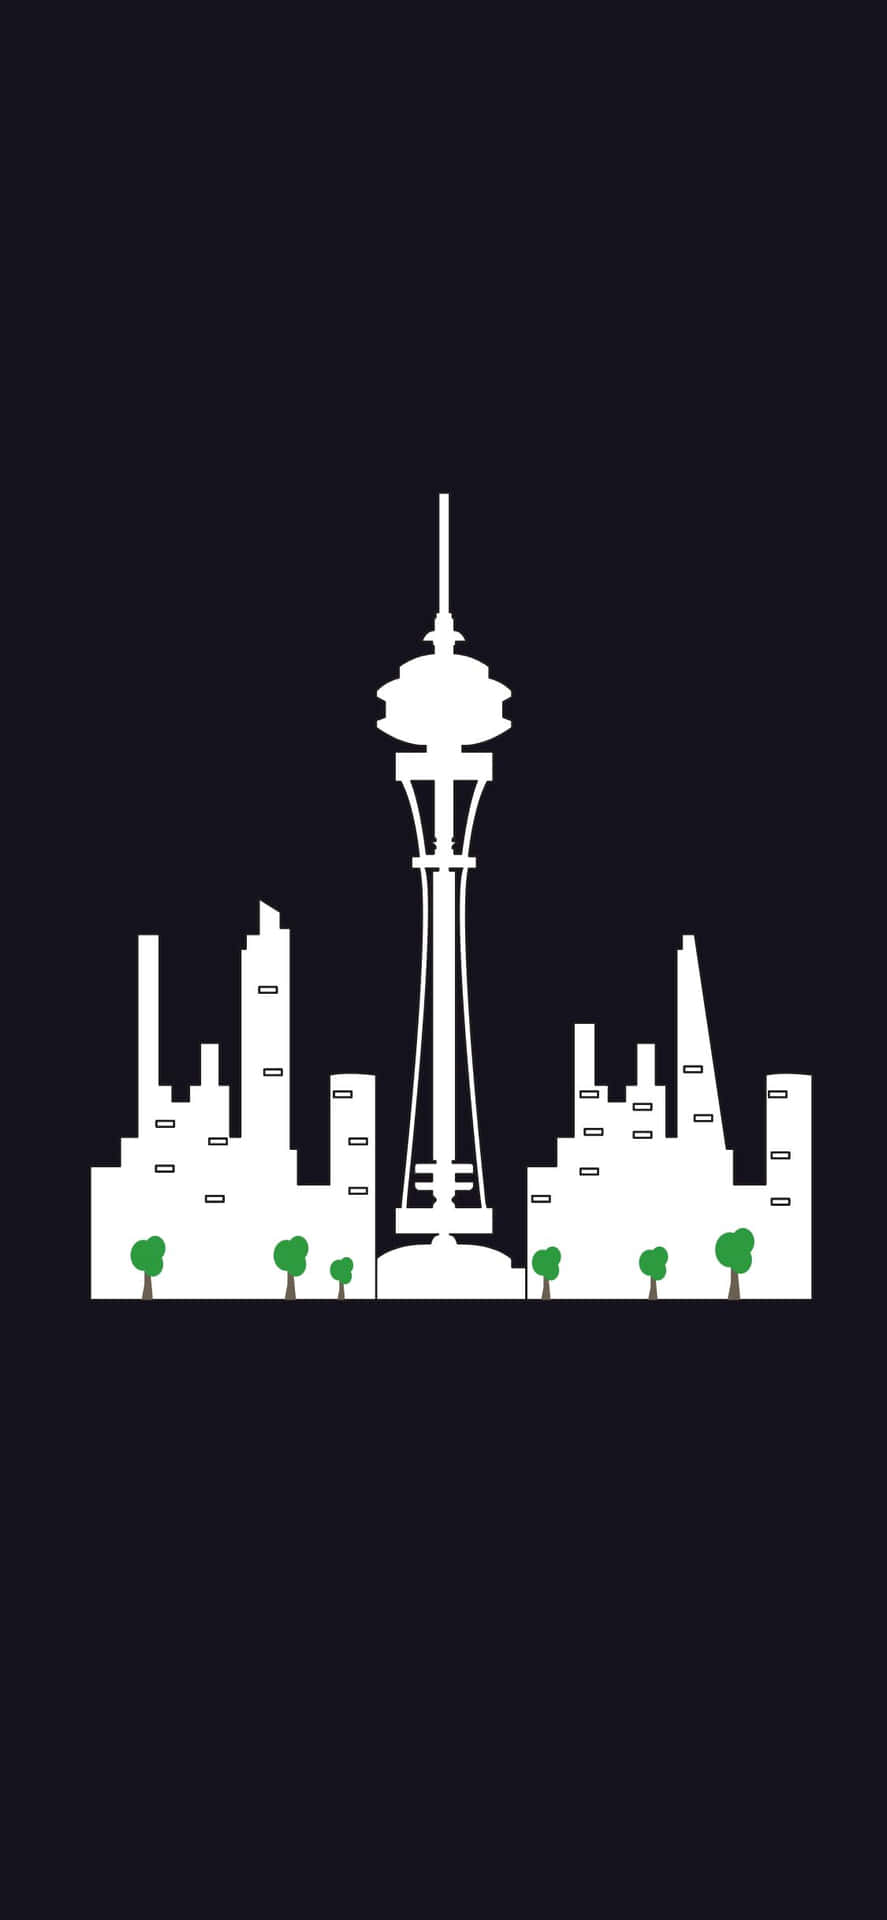 Eineatemberaubende Skyline Von Seattle, Washington, Die Durch Die Linse Eines Iphone X Betrachtet Wird.